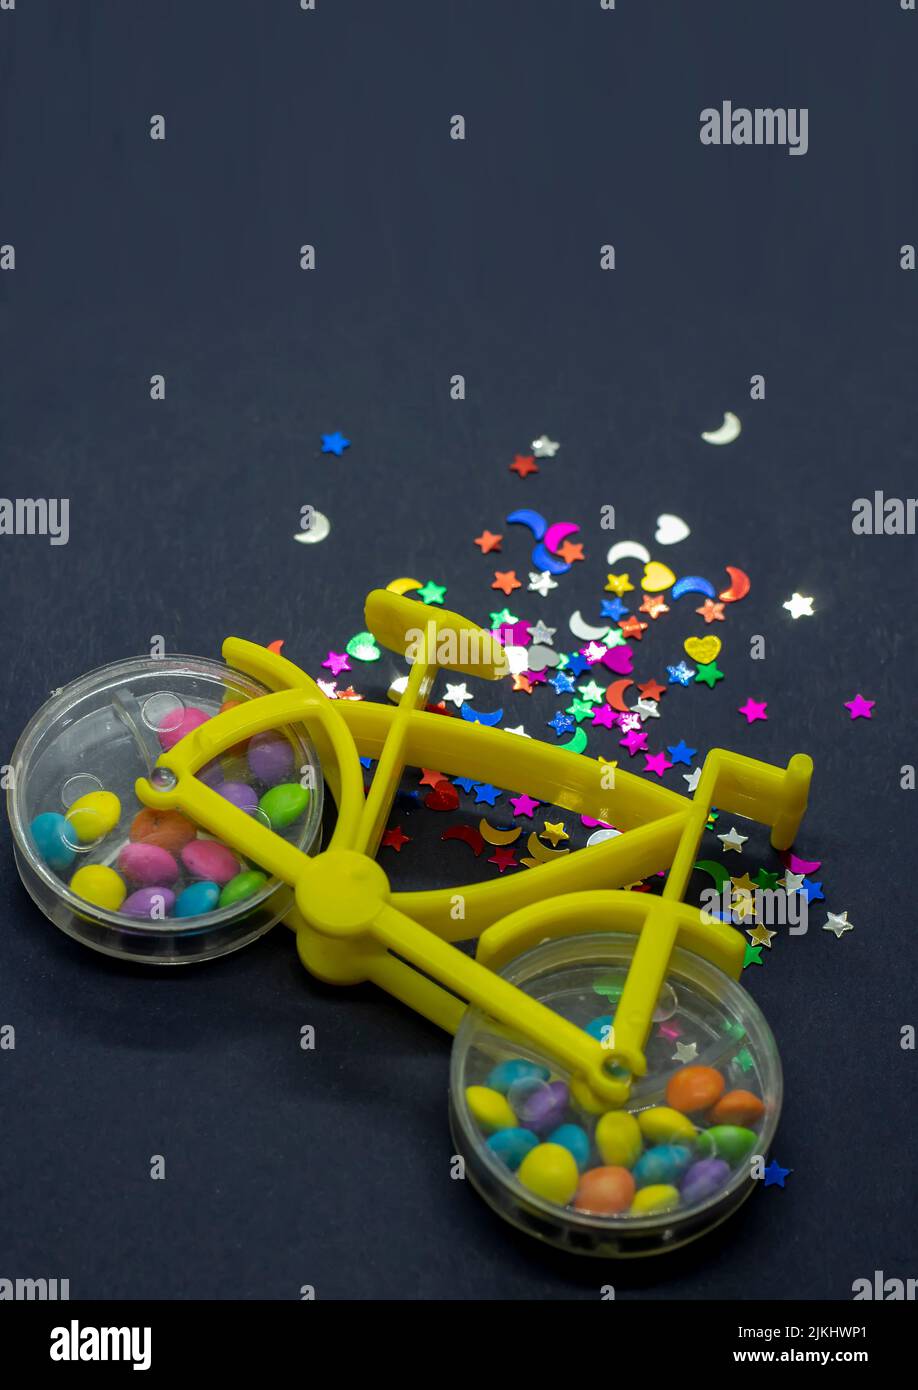 Un primo piano di una bicicletta giocattolo con caramella noce colorata all'interno delle ruote e forme glitterate accanto ad essa Foto Stock